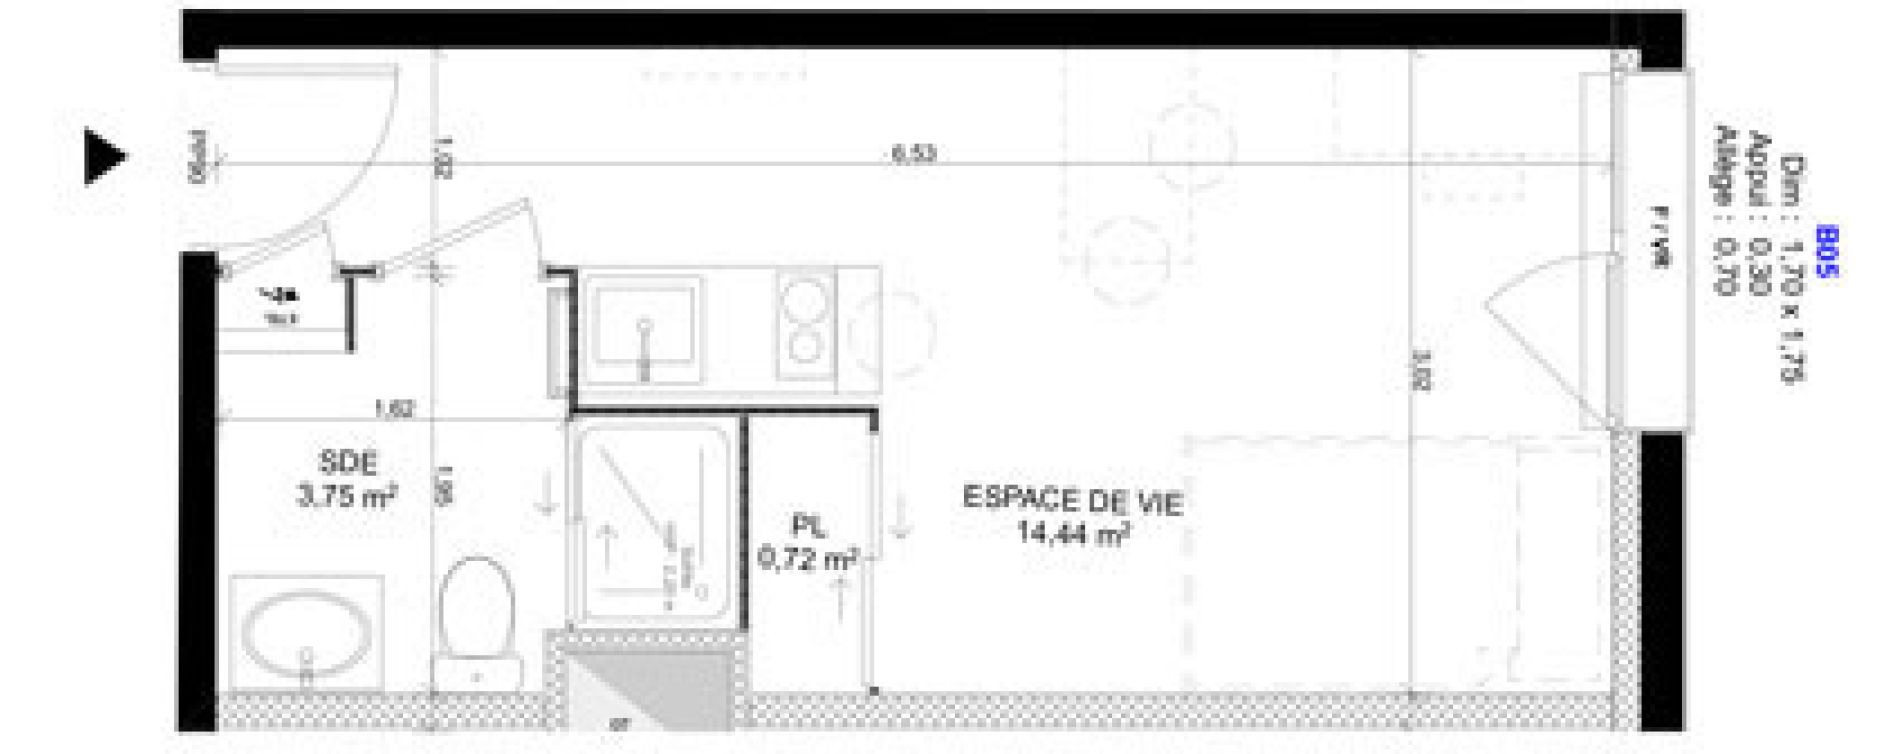 Appartement T1 meubl&eacute; de 18,91 m2 au Havre Sainte marie - saint leon